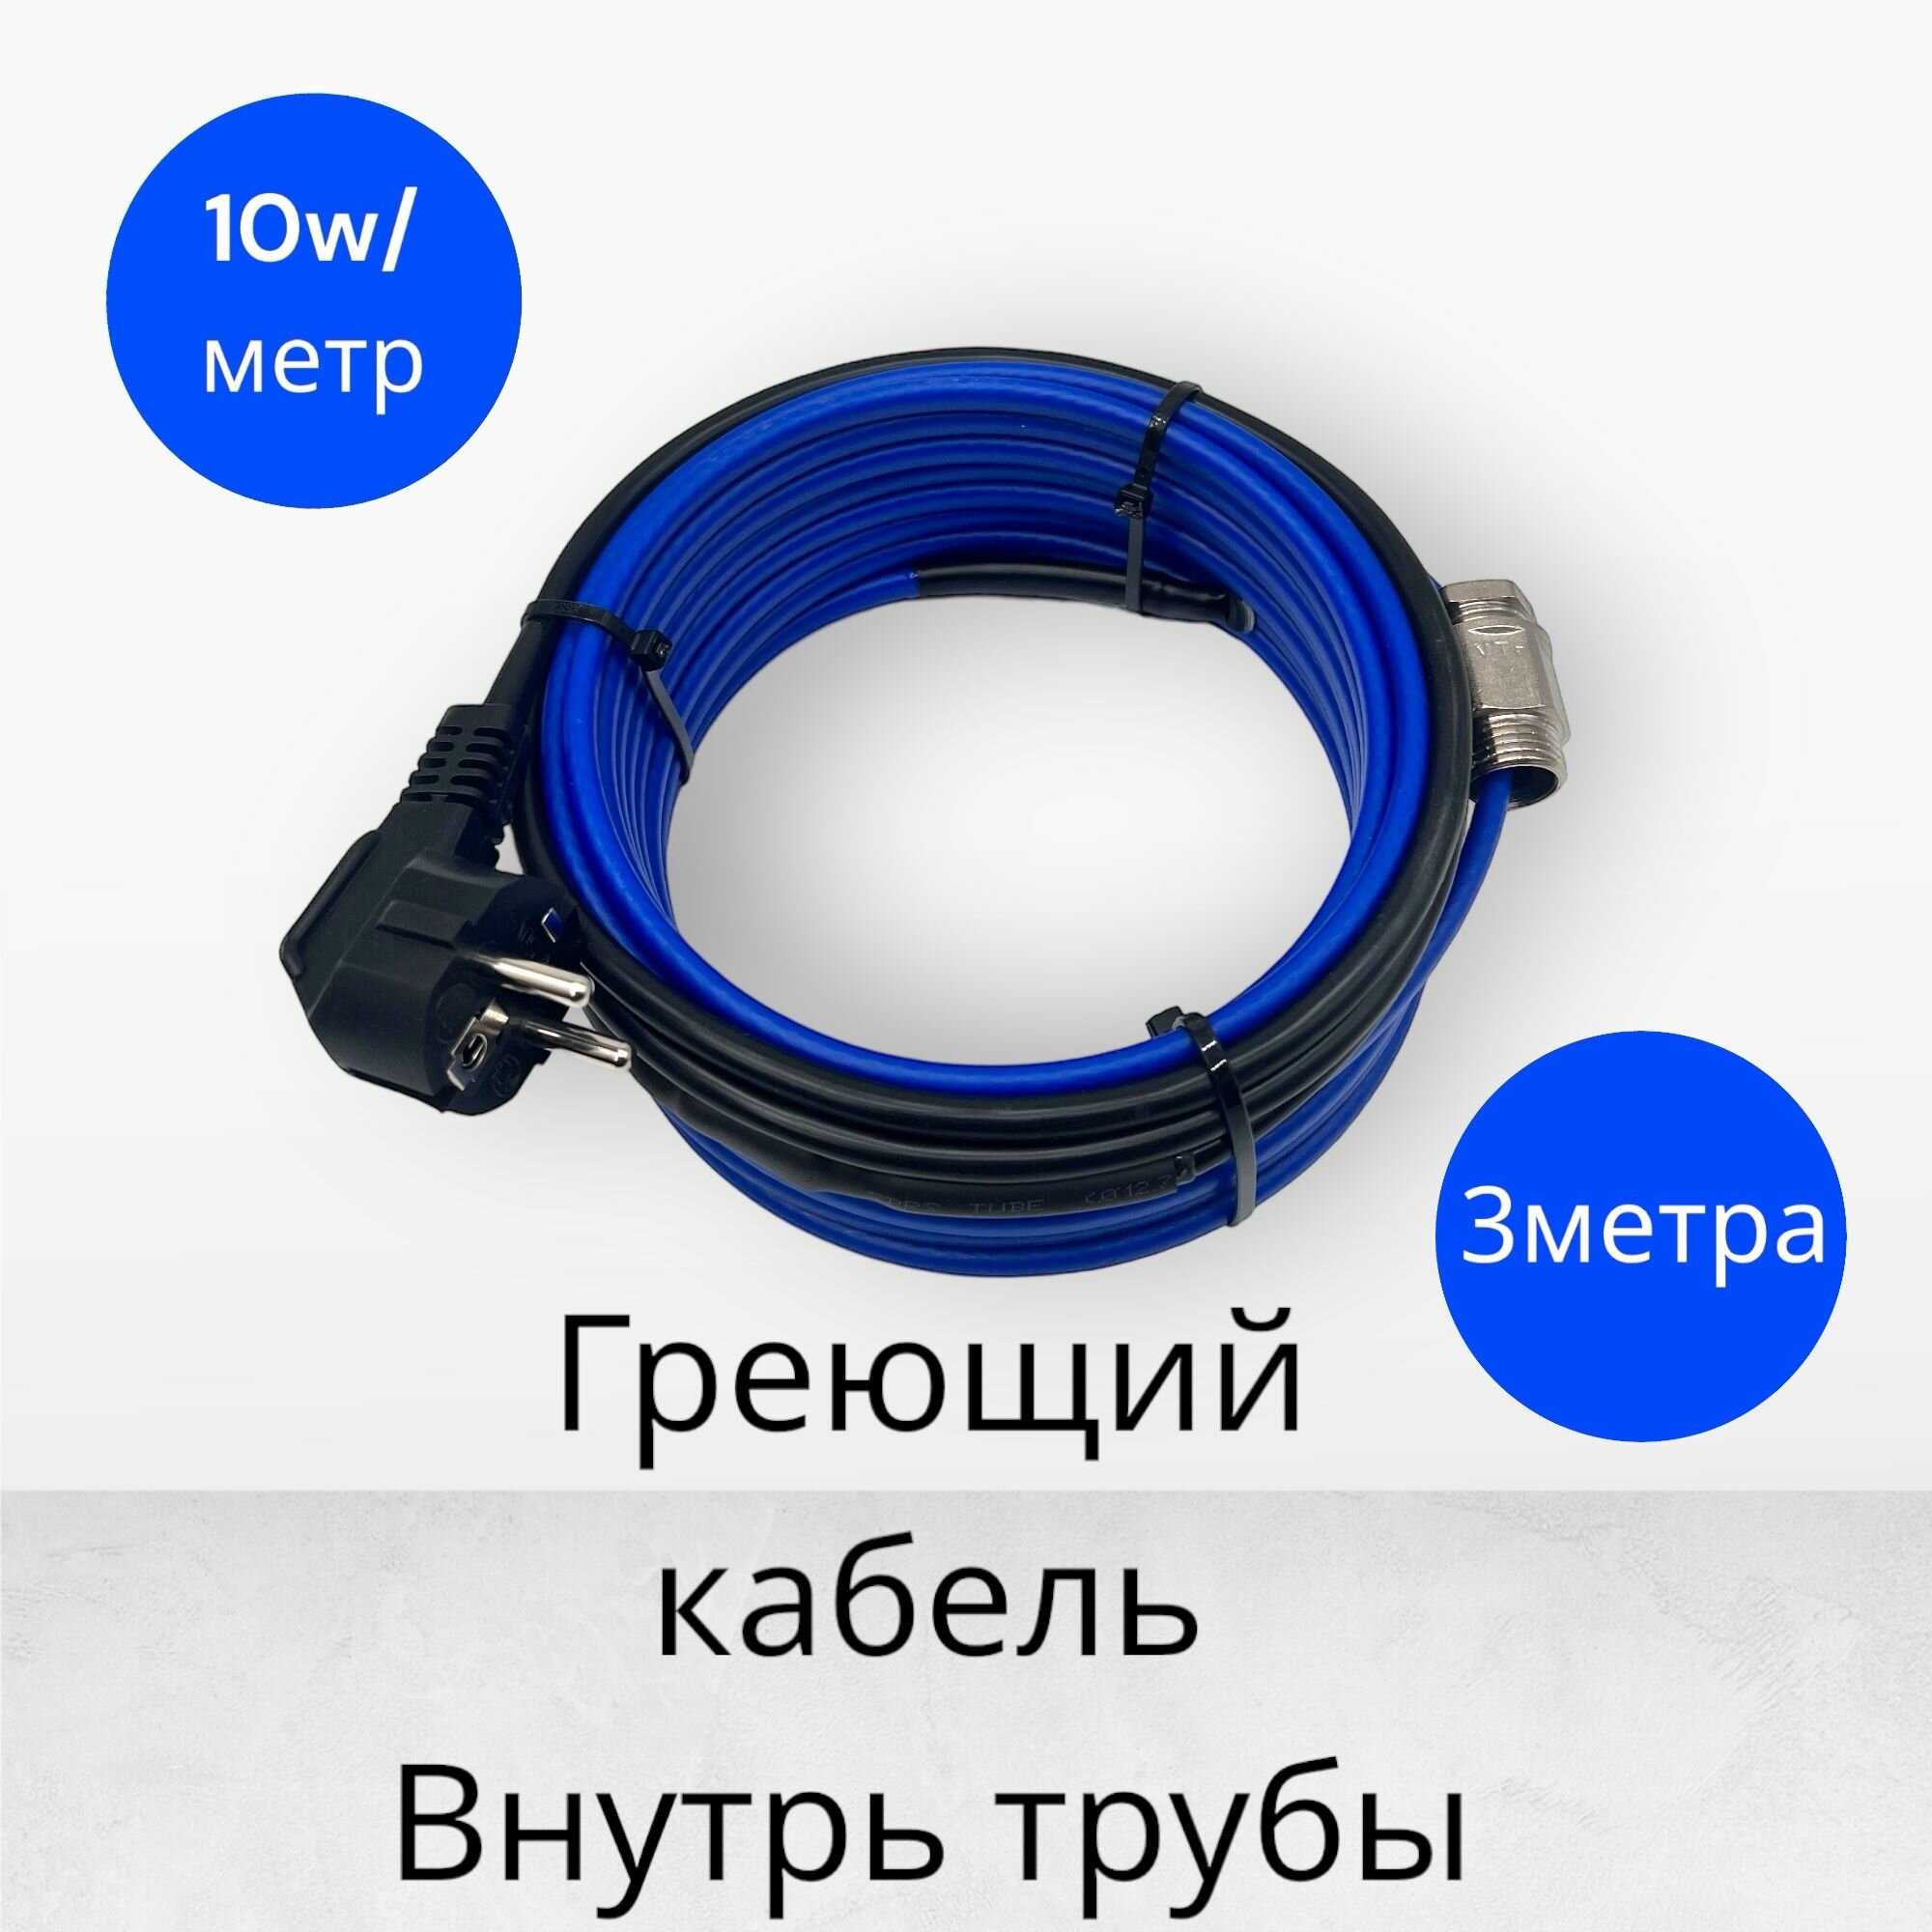 Греющий саморегулирующийся кабель внутрь трубы TM PRO - 10Вт/м (3м. комплект)